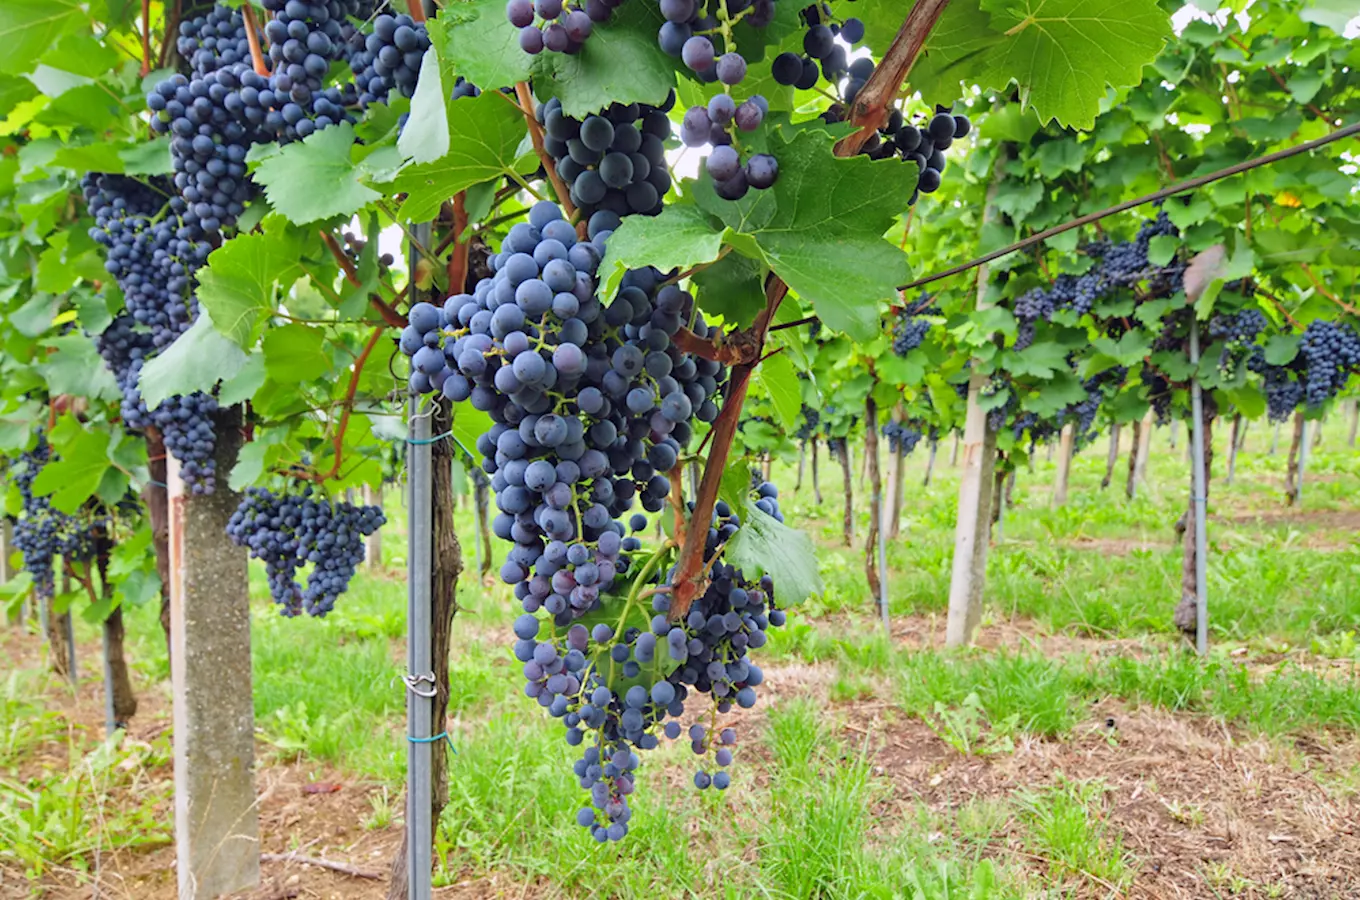 Krajem vína - letní putování okolím Modrých Hor